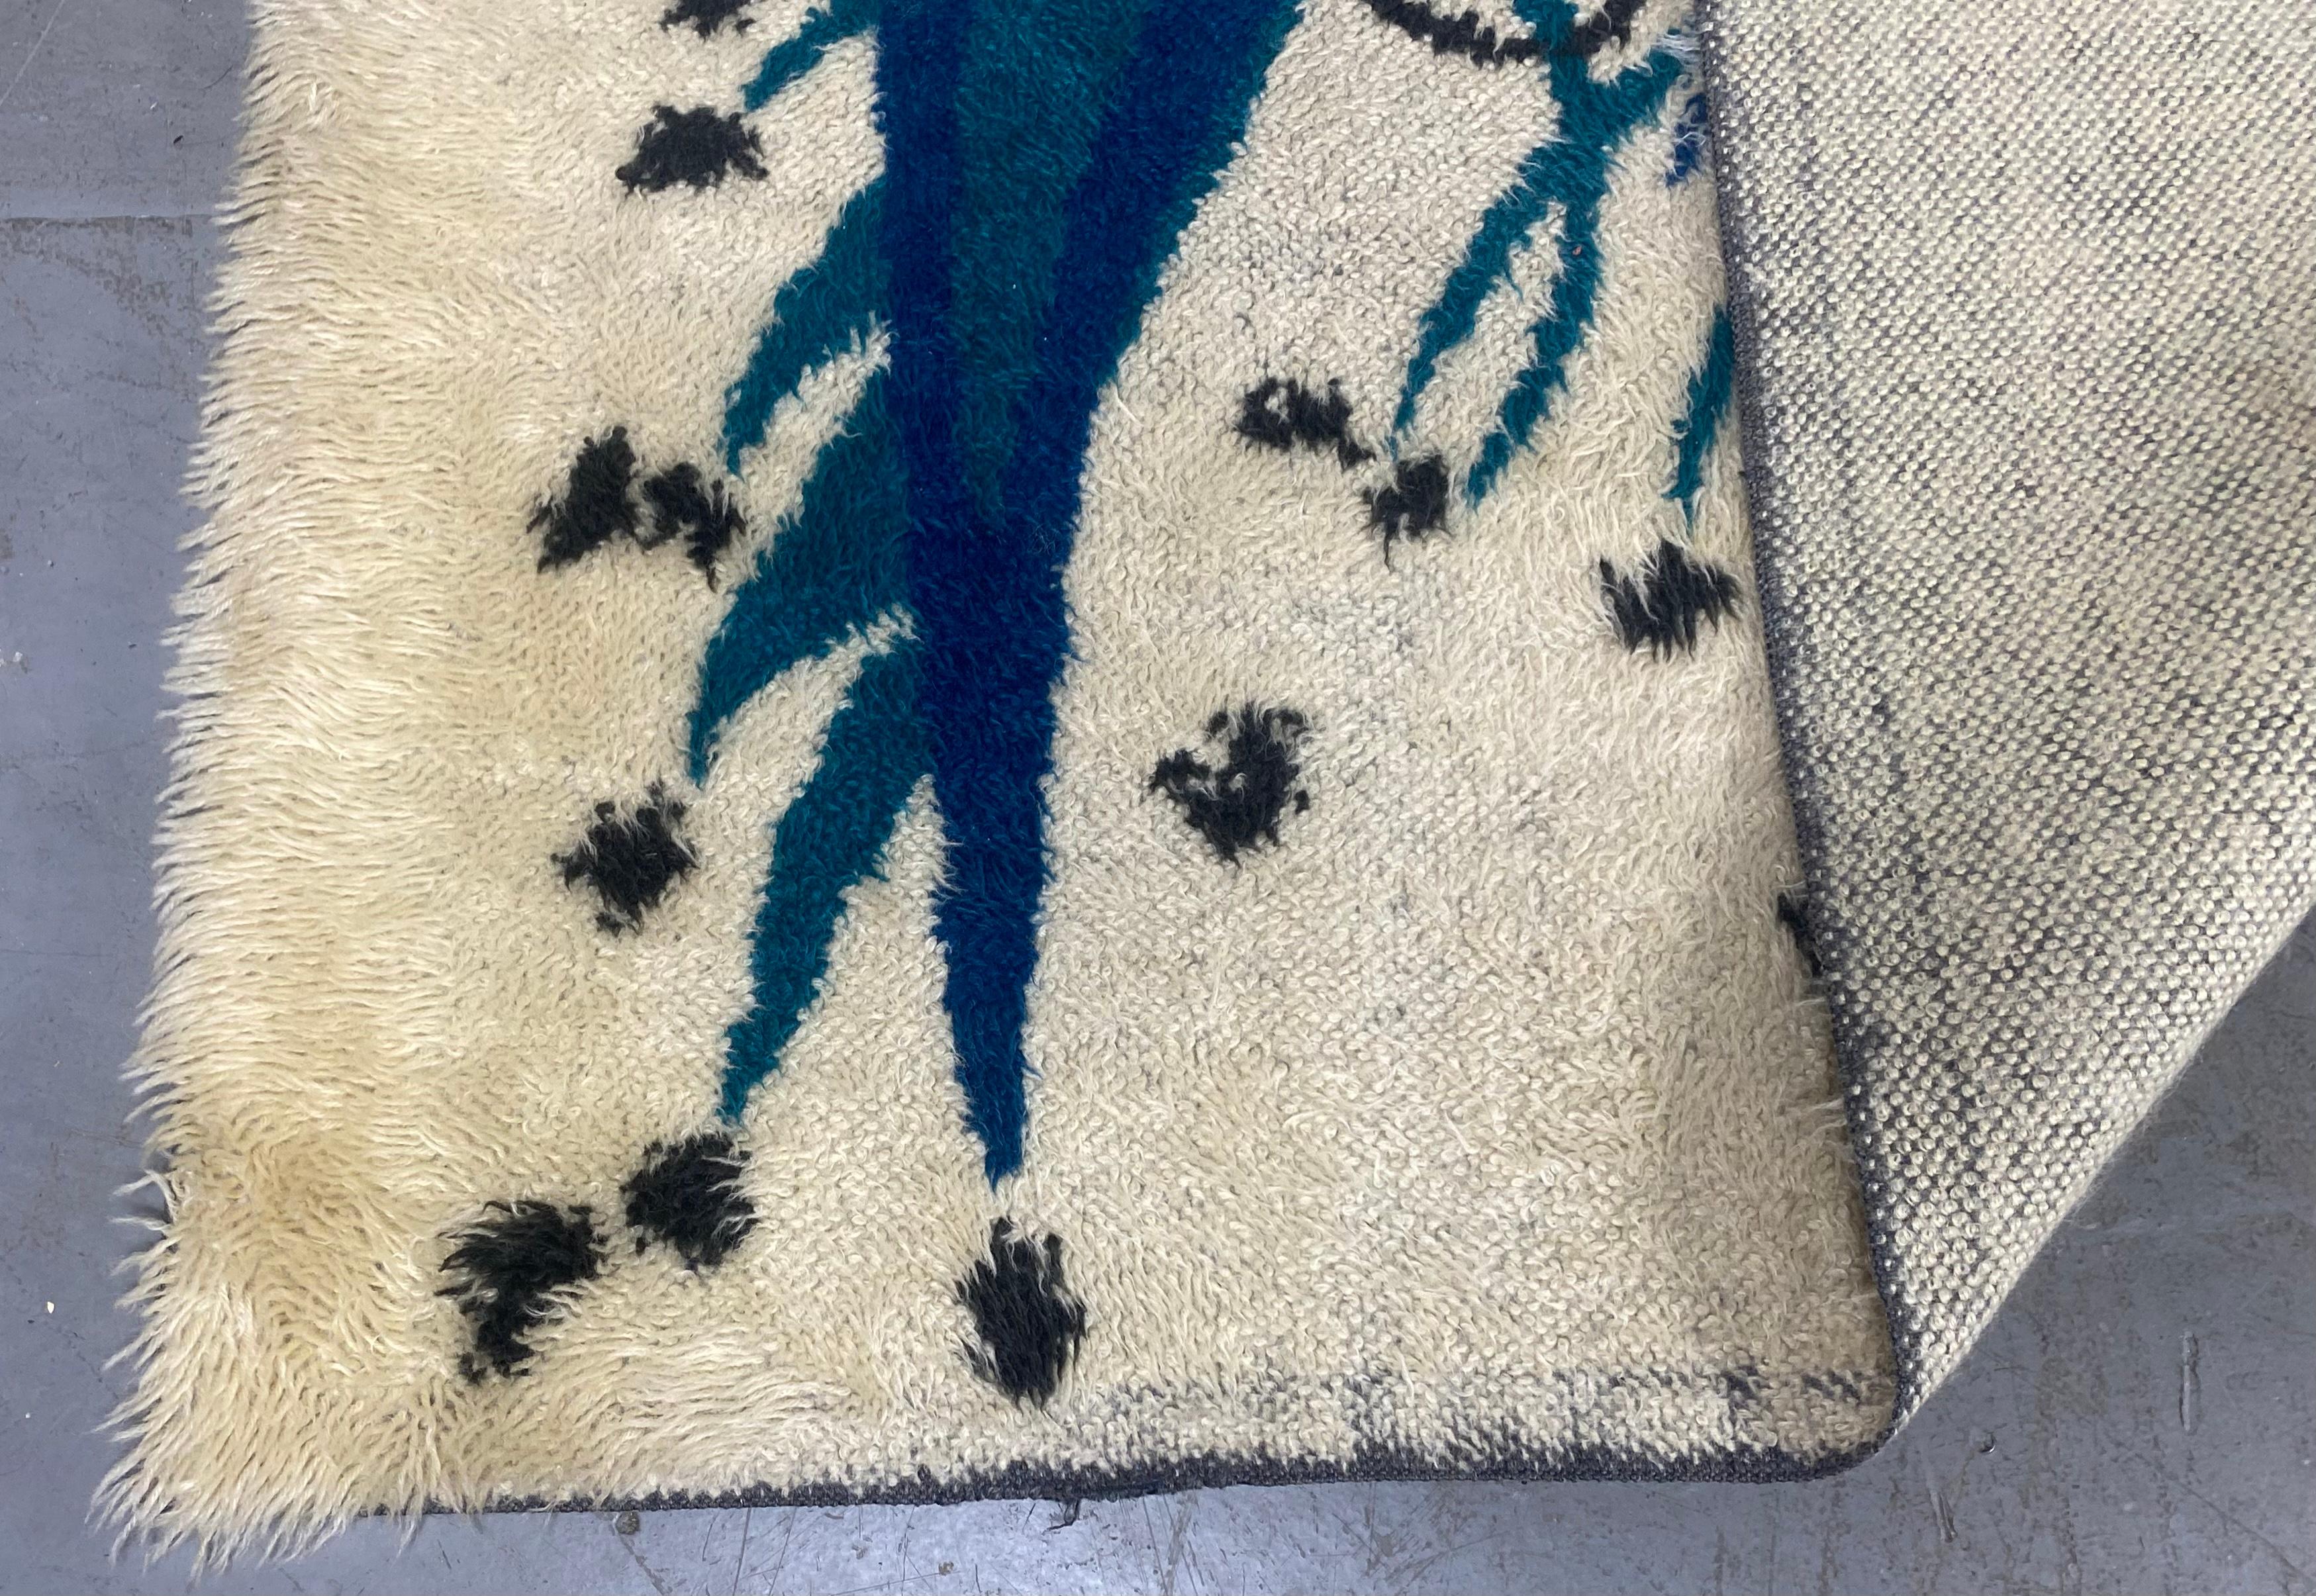 Seltene Gelegenheit, einen erstaunlichen modernen abstrakten skandinavischen Zottelteppich zu erwerben, der Ege Rya zugeschrieben wird. Der Teppich ist ein dicker Zottelteppich mit abstraktem abstraktem Motiv in zwei Blautönen auf weißem Grund. Er